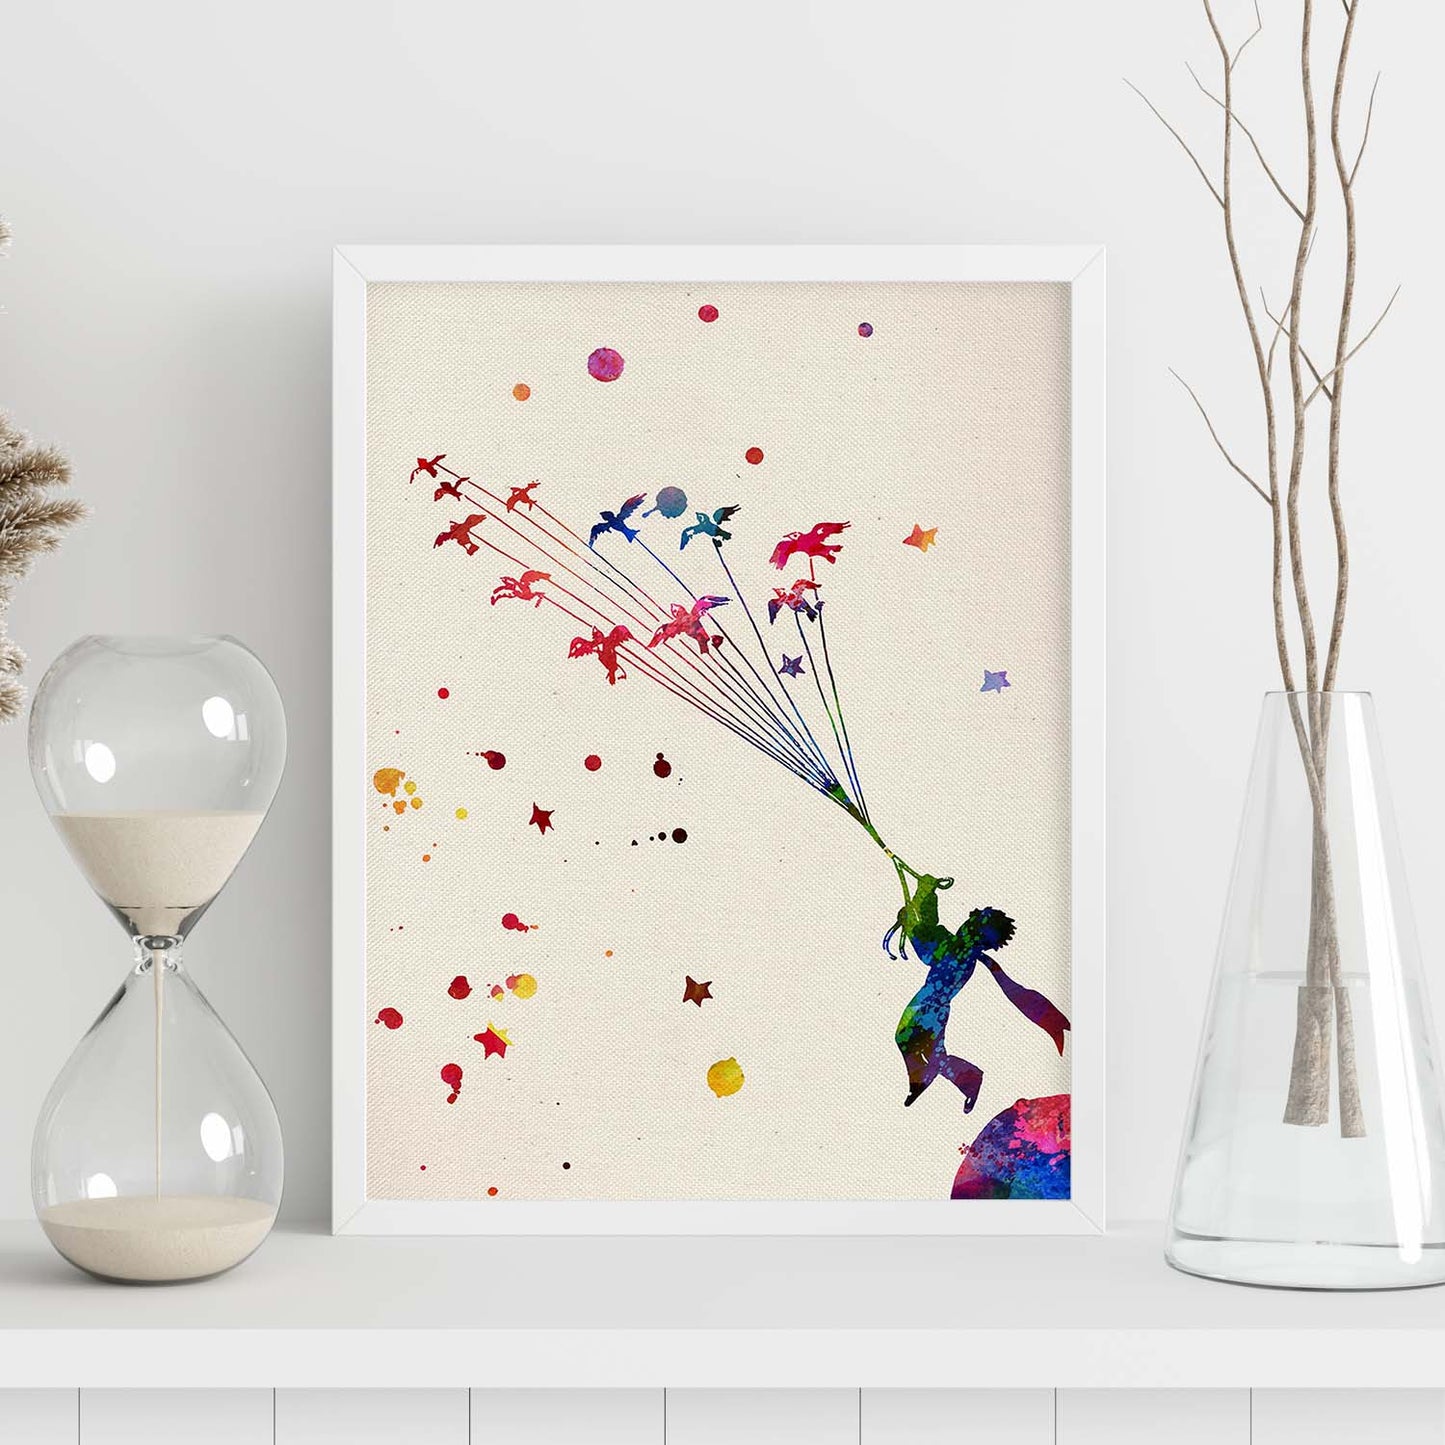 Poster de El principito volando con diseño acuarela. Mix de láminas con estilo acuarela-Artwork-Nacnic-Nacnic Estudio SL